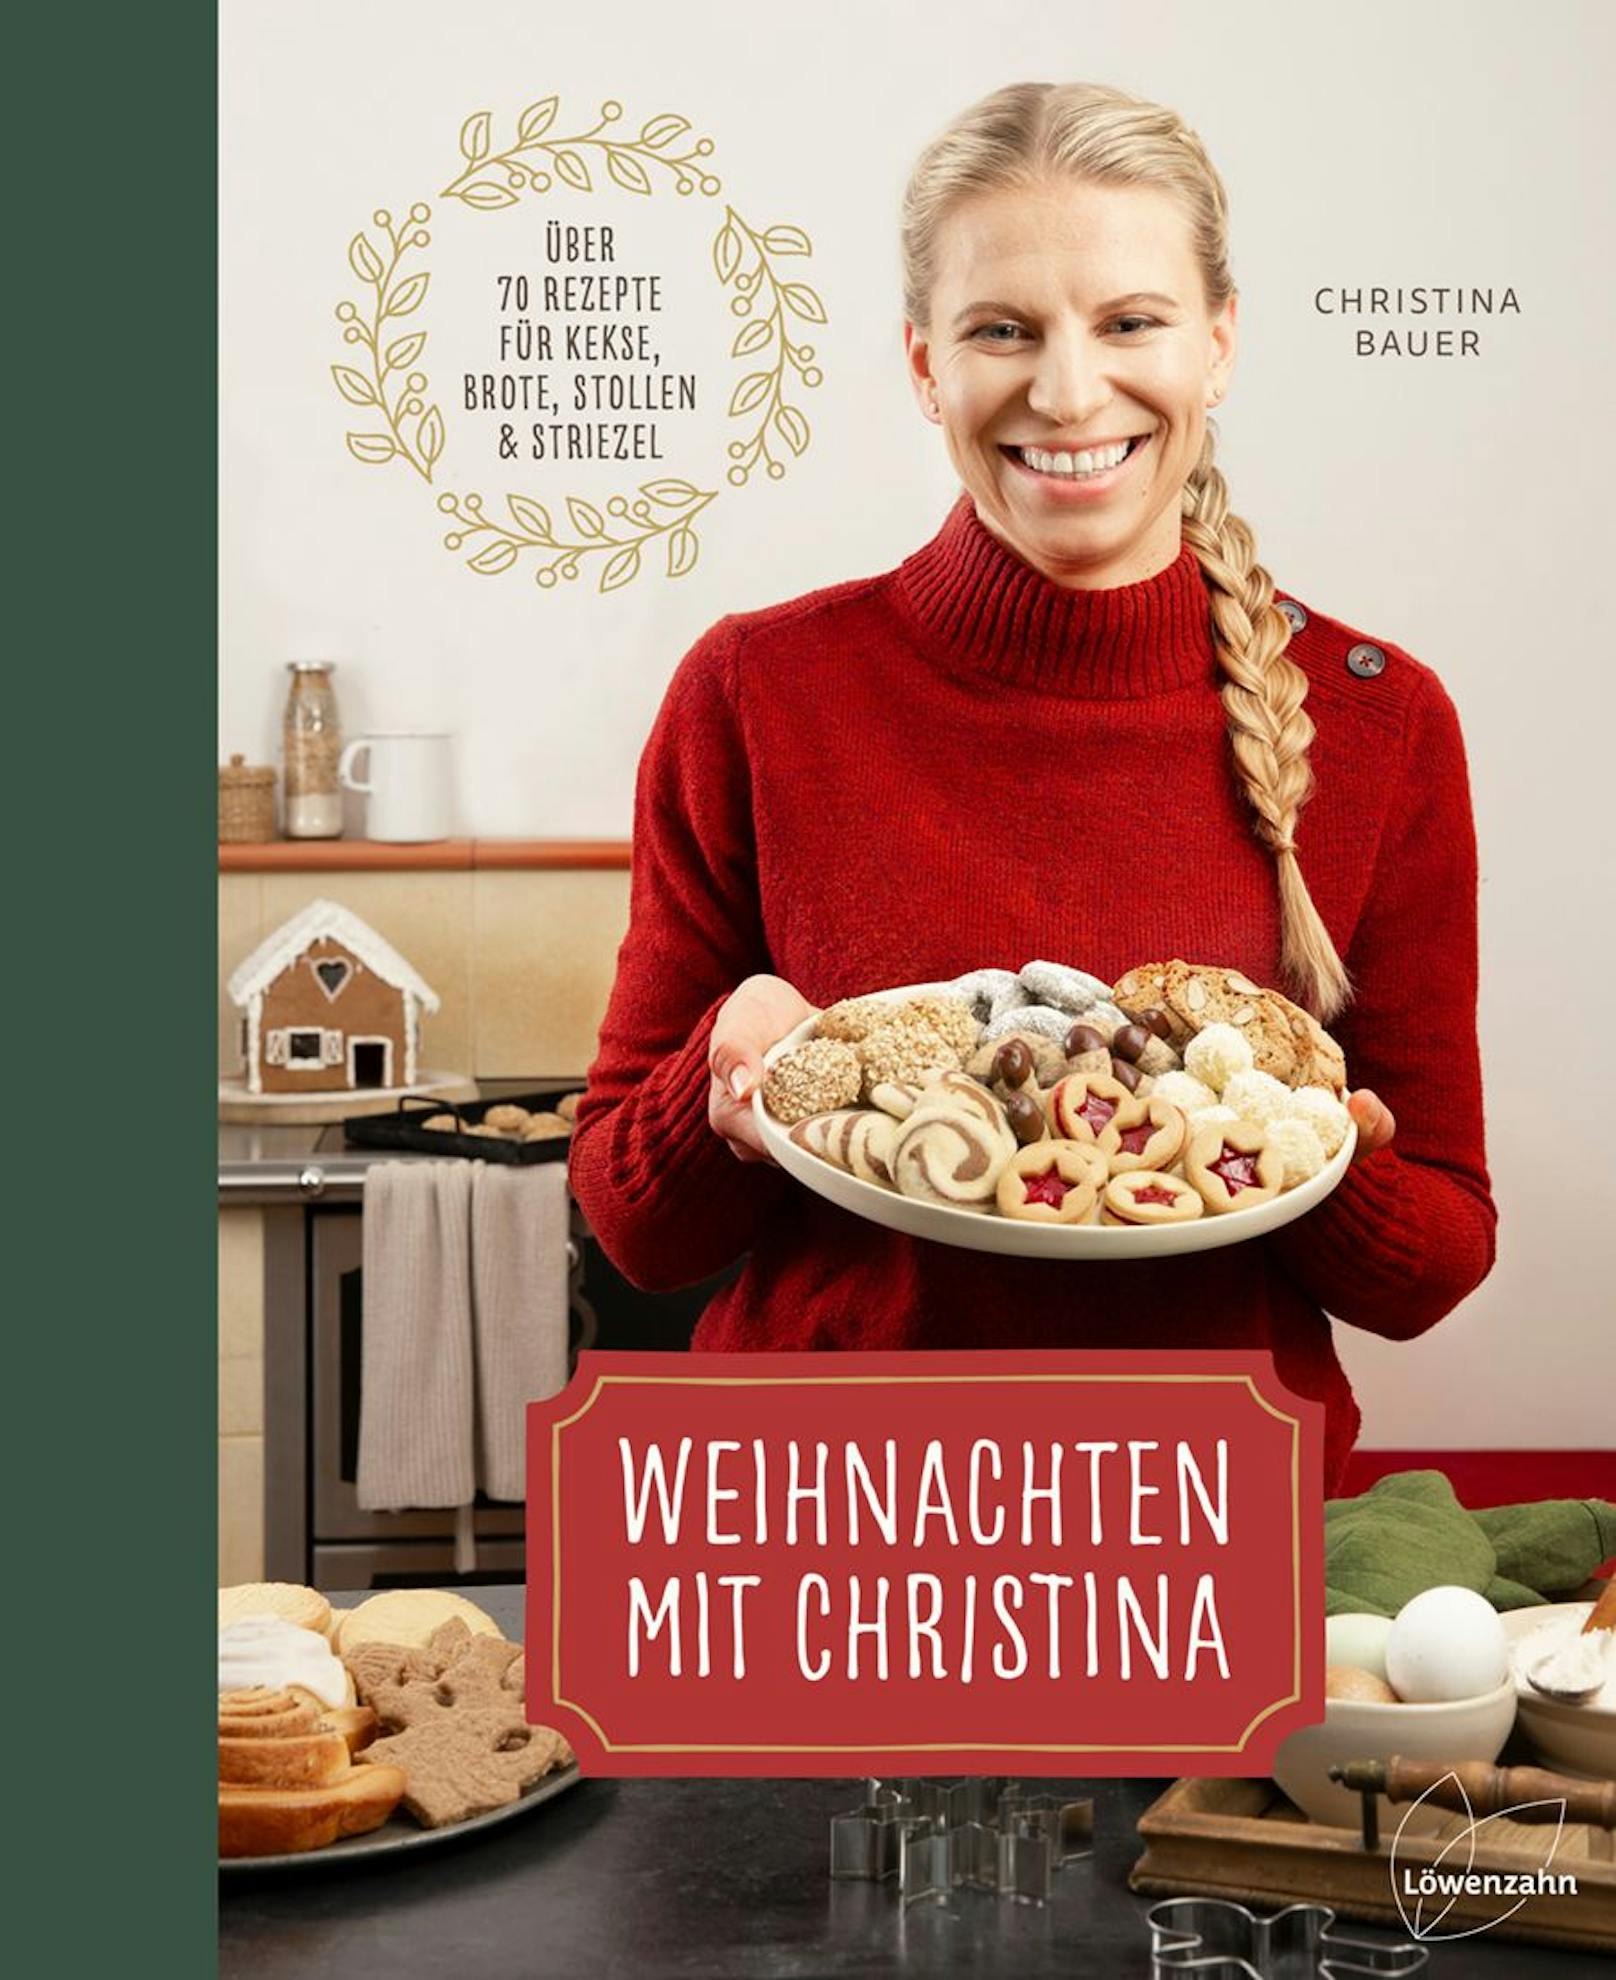 Auch das fünfte Buch von Christina Bauer – "Weihnachten mit Christina" – ist ein voller Erfolg.